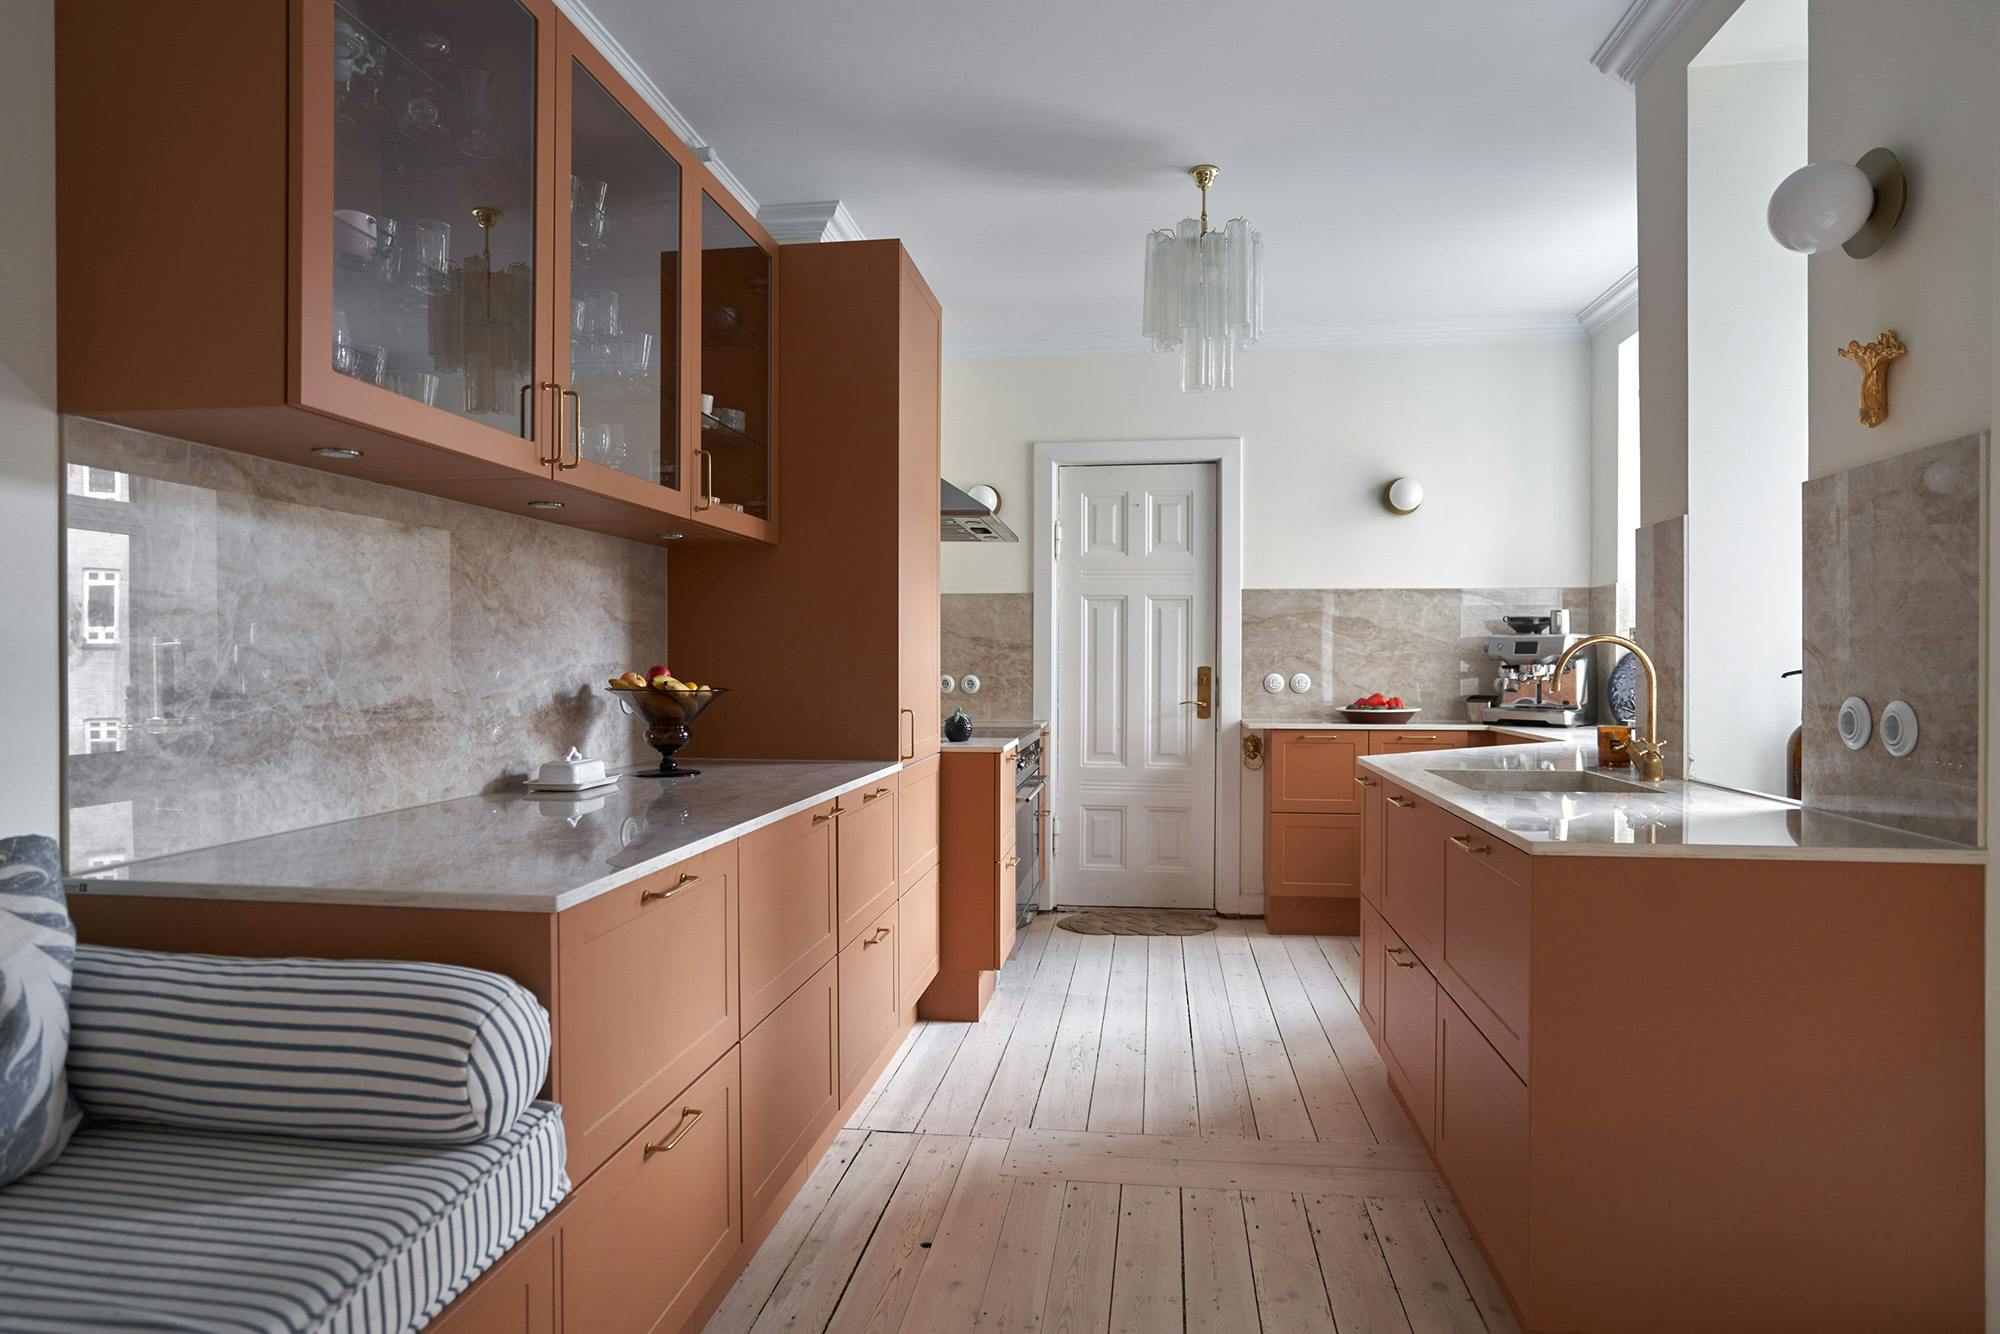 Numero immagine 37 della sezione corrente di Dekton has found its way to the home of renowned architect and designer Nikki Butenschön di Cosentino Italia